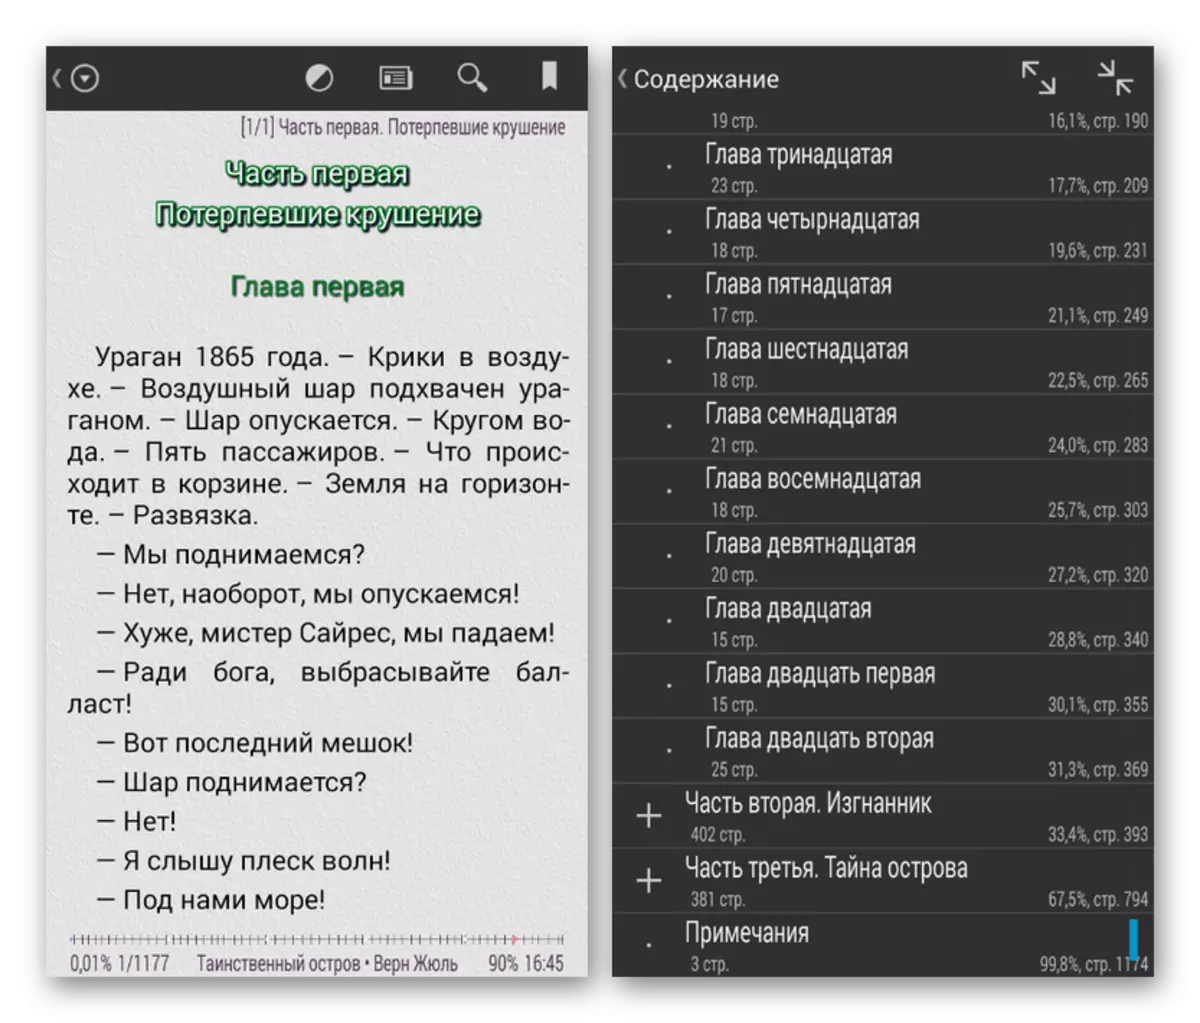 Halimbawa ng isang libro sa format ng EPUB sa Android